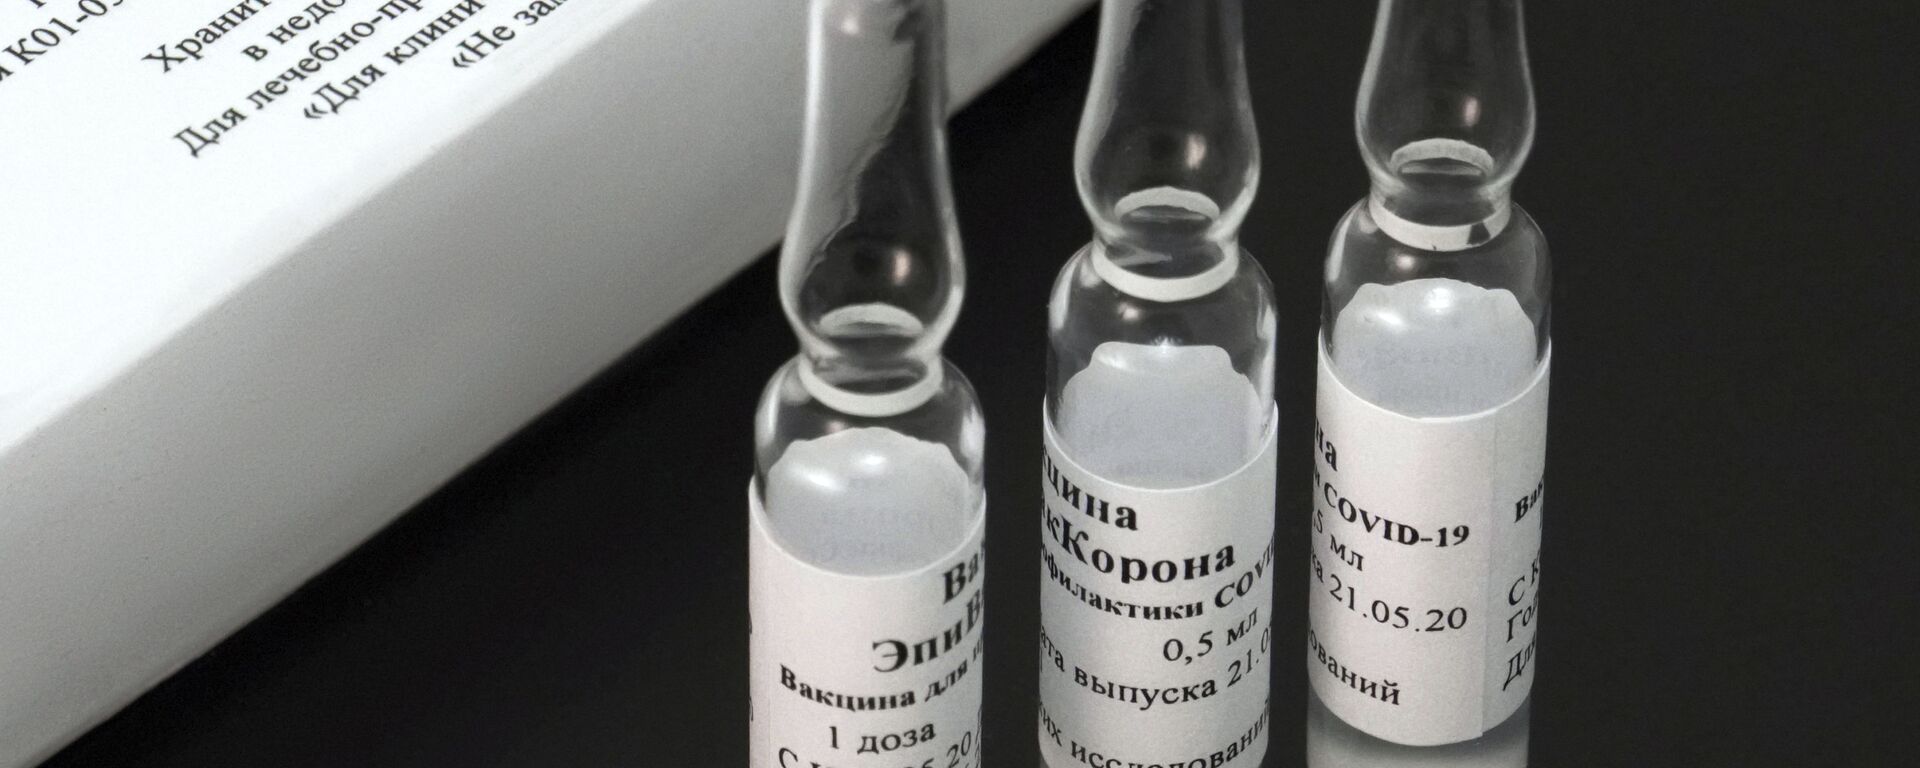 EpiVacCorona, vacuna rusa - Sputnik Mundo, 1920, 05.03.2021